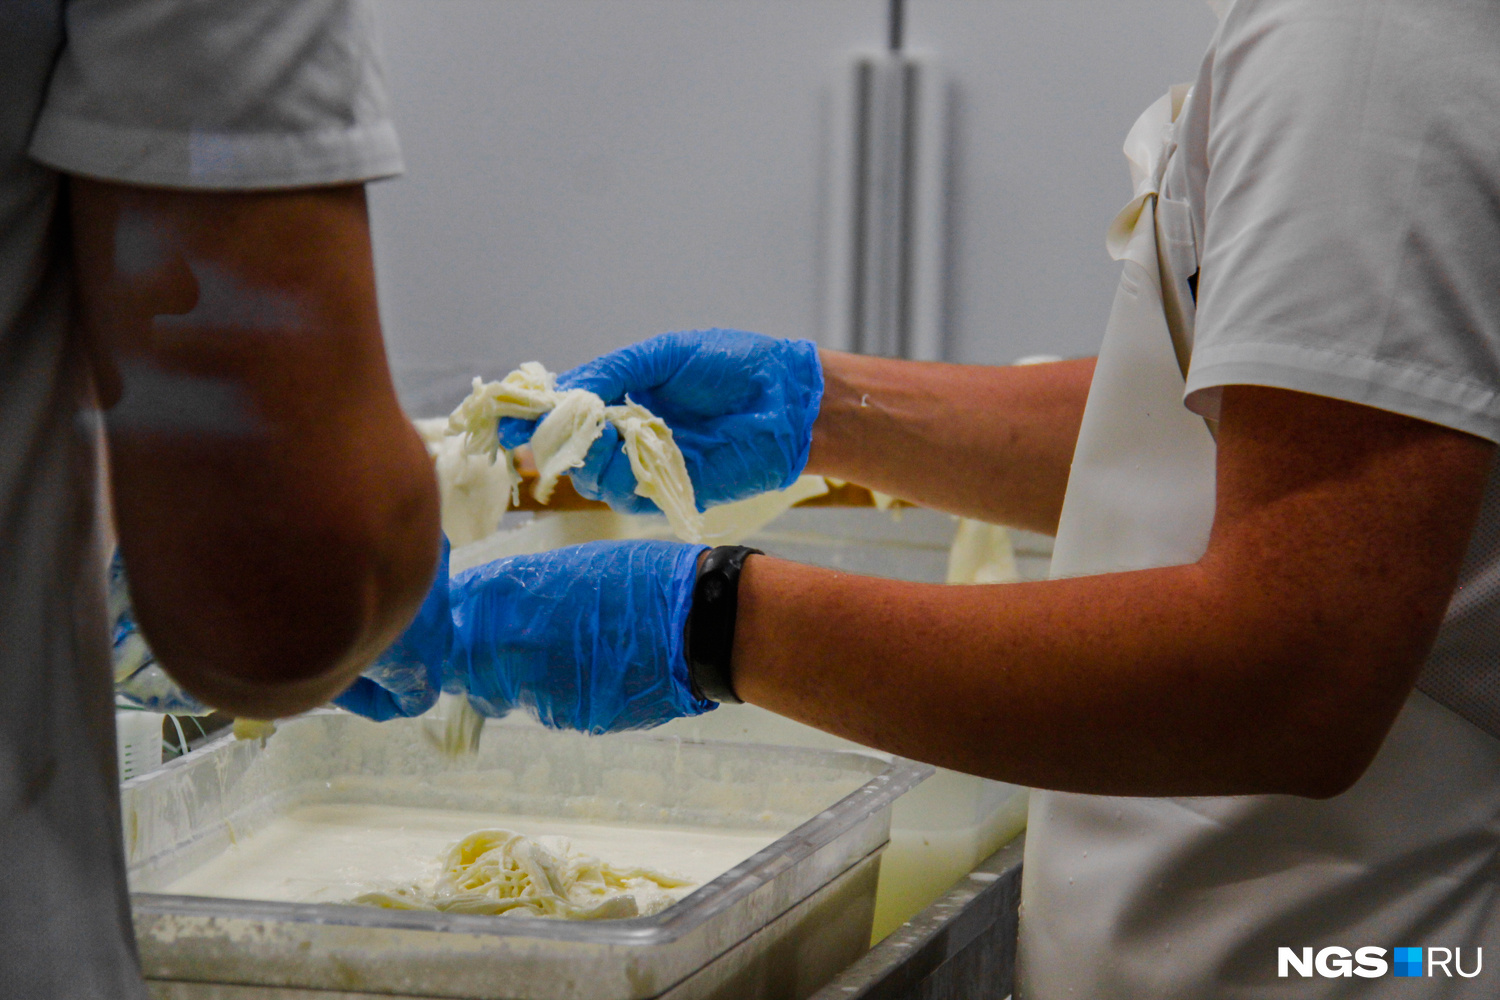 Желающие могут в подробностях рассмотреть, как в «Сыроварне» делают сыр